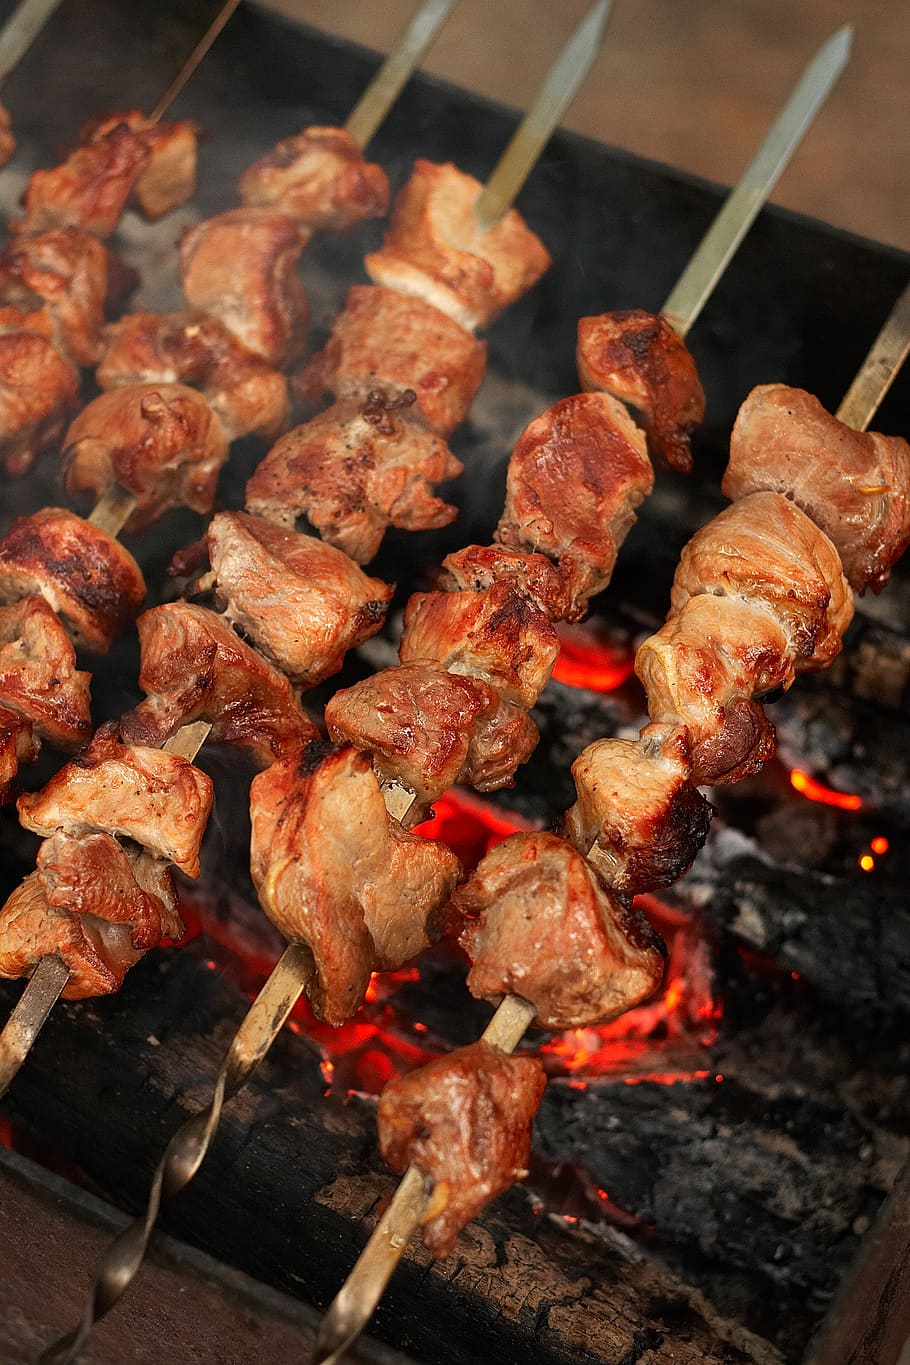 barbecue panggang, makanan, piknik, shish kebab, daging, mangga, daging goreng, menggoreng, bara, di alam